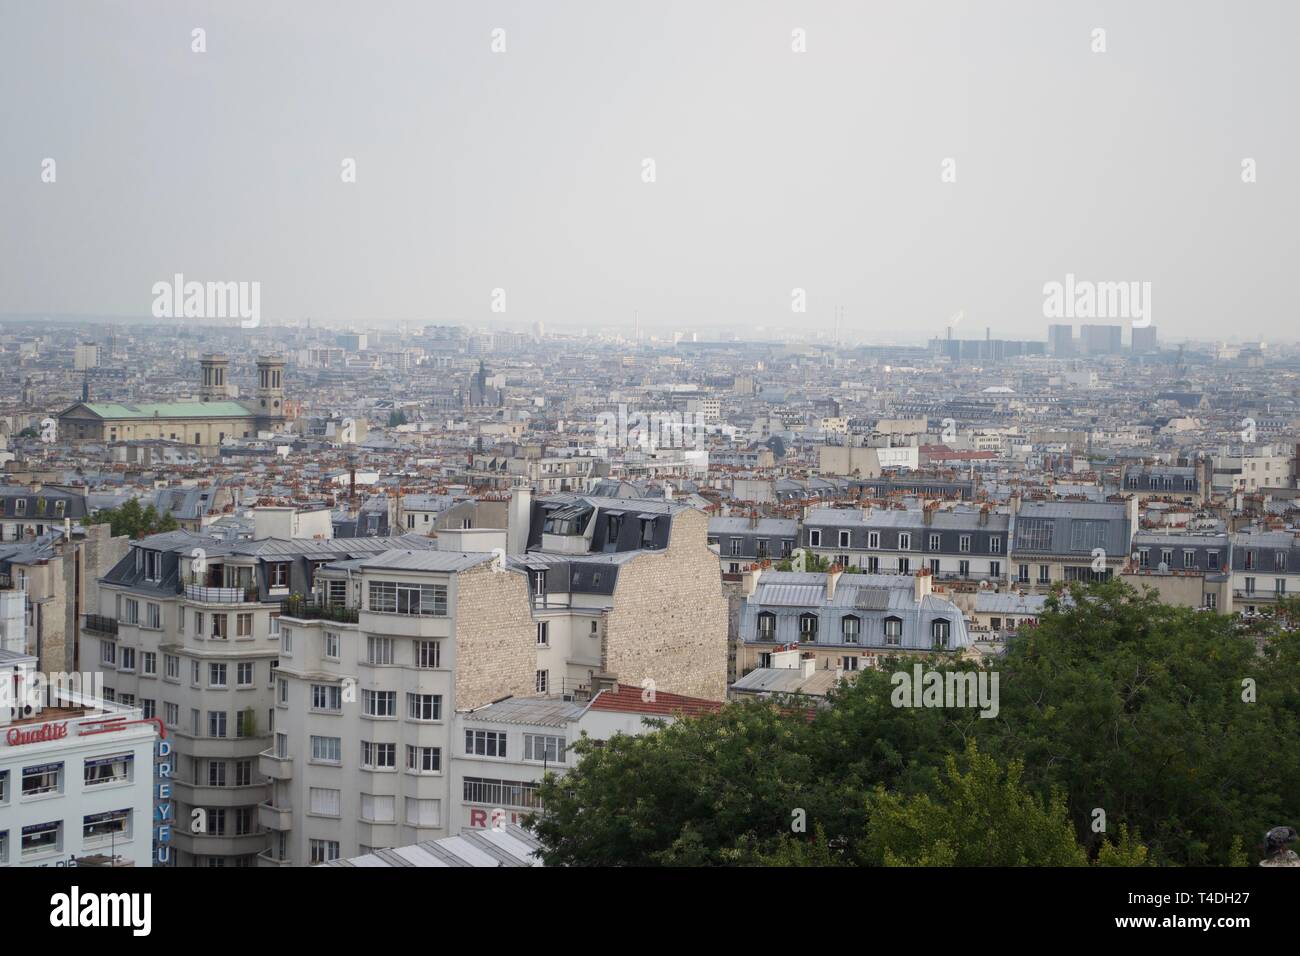 Ciel voilé toits de Paris de Montmartre, France. Pas de sites célèbres, vous n'avez qu'à faible niveau d'occupation du logement surpeuplé, avec des immeubles modernes de grande taille dans la région de Misty distance Banque D'Images